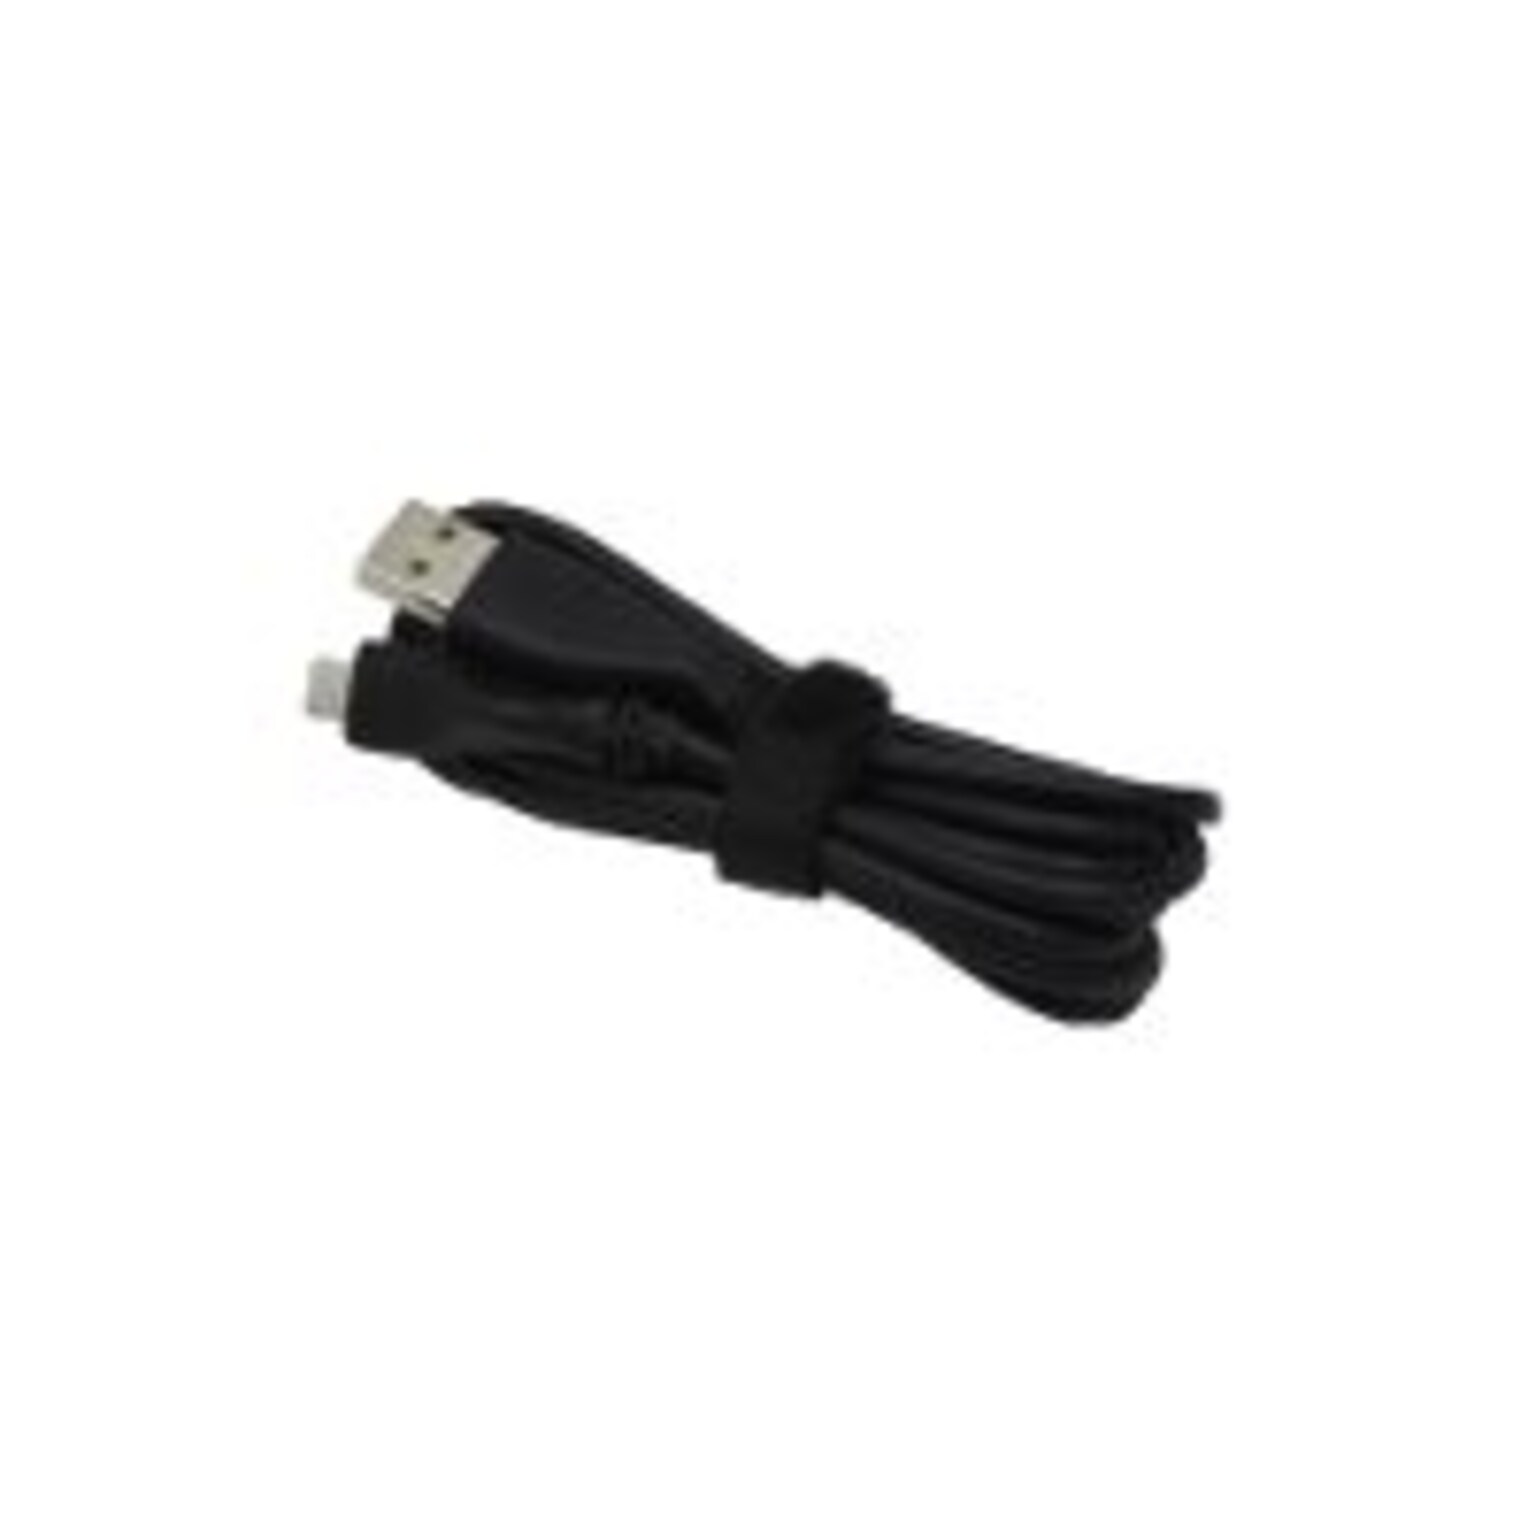 Logitech 16.4 USB A Cable, Black (993-001391)